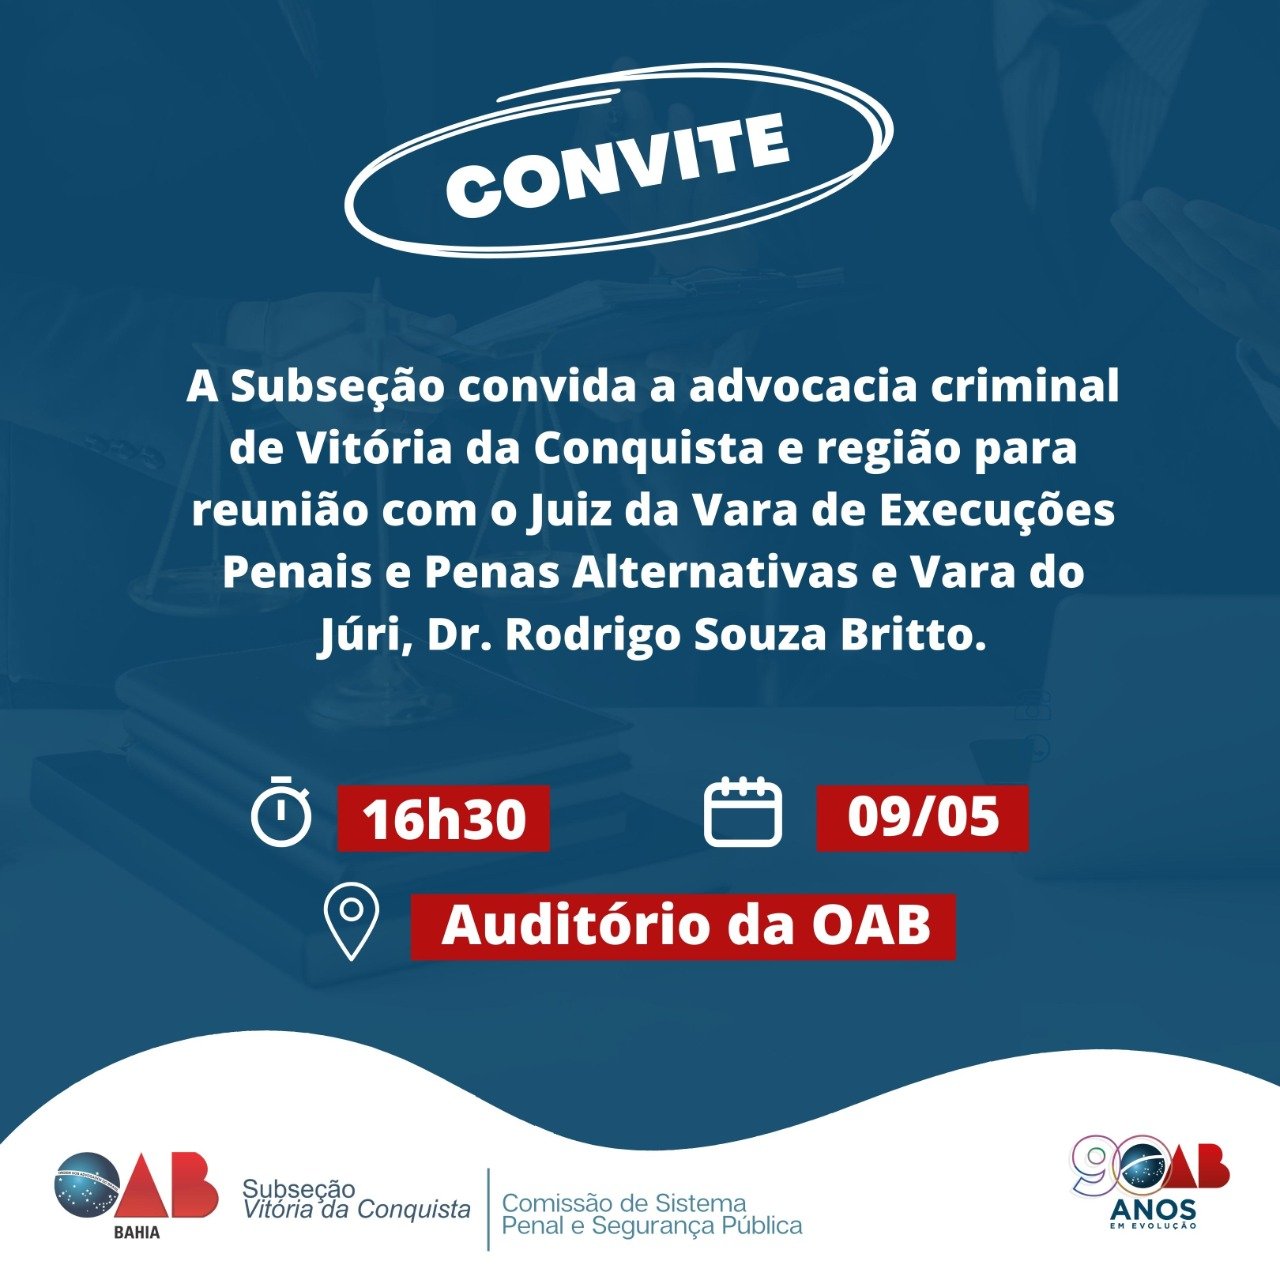 OAB Vitória da Conquista convida para reunião com Dr. Rodrigo Souza Britto novo Juiz da Vara de Execuções Penais